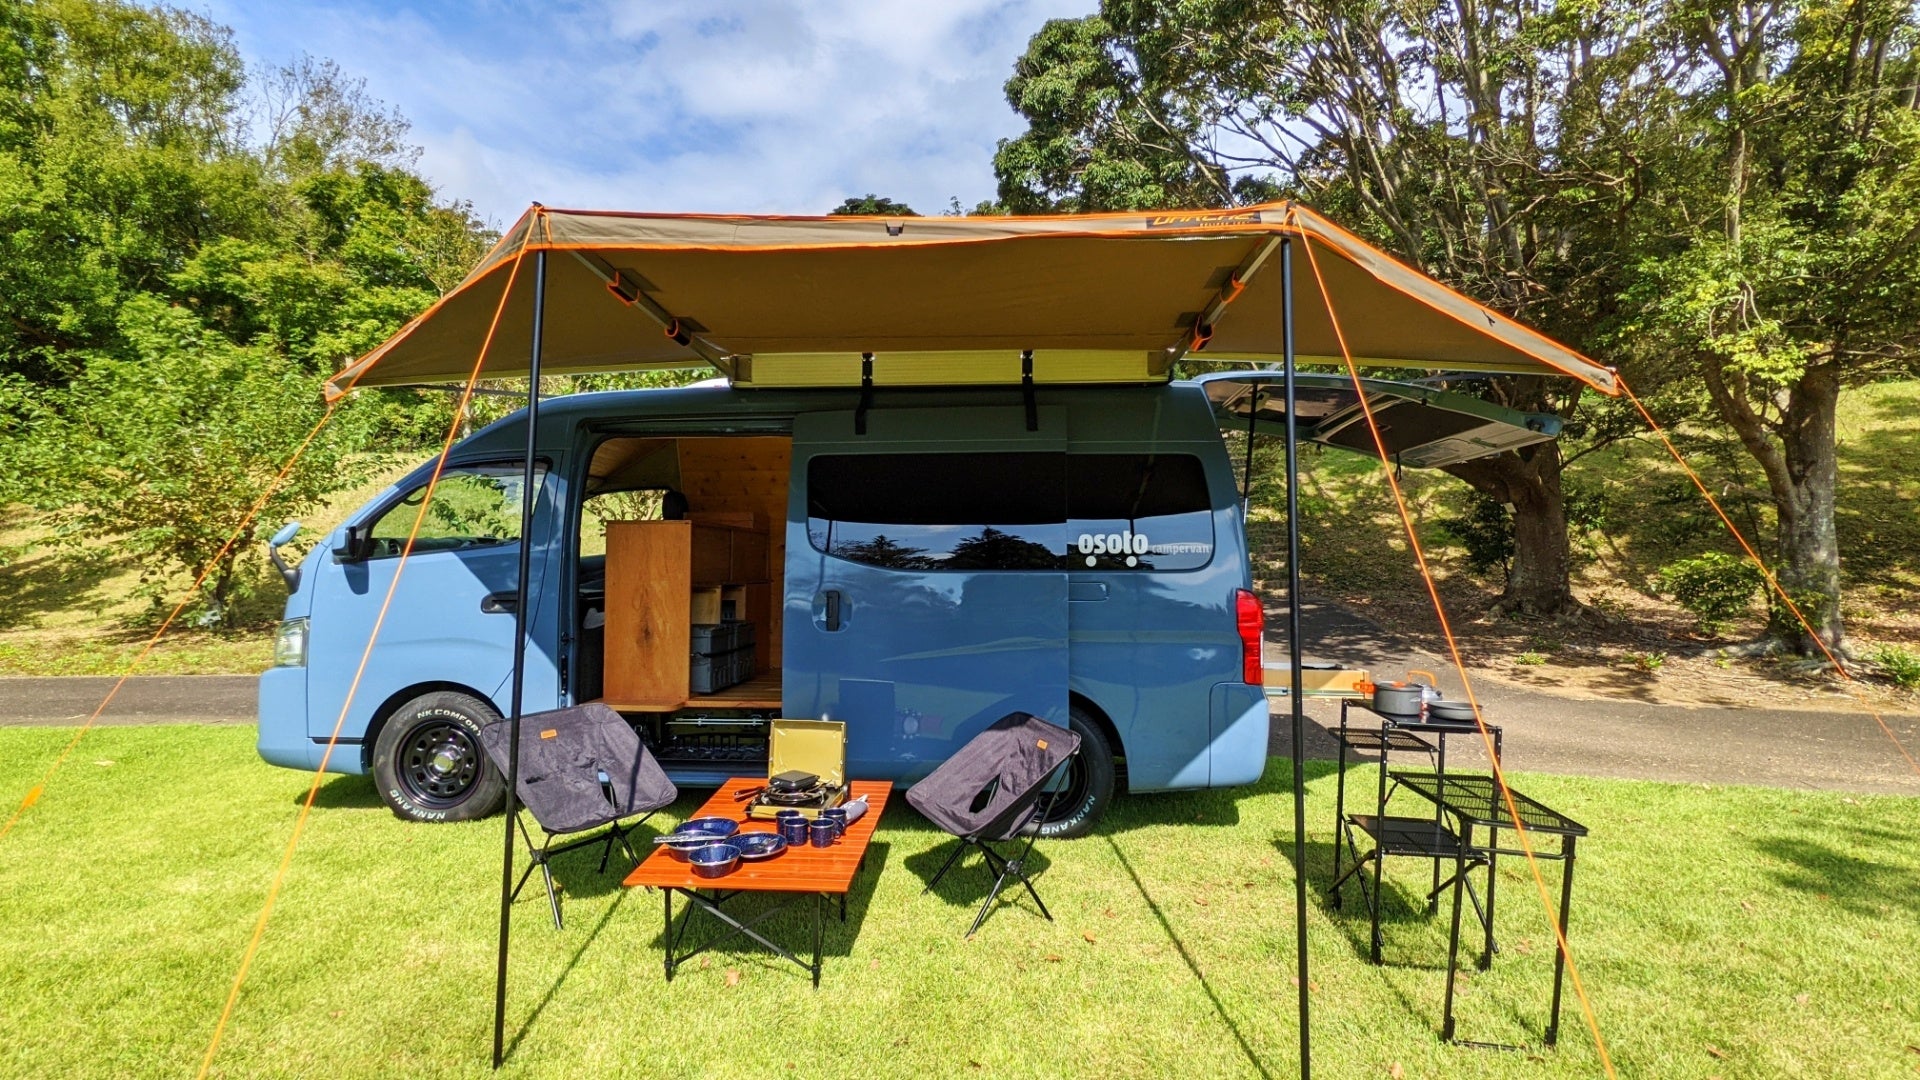 キャンプ道具の無人レンタルサービス「​福岡キャンプレンタル」と福岡・五島でのカスタムバンのレンタルを行う「OSOTO campervan」が業務提携のサブ画像3